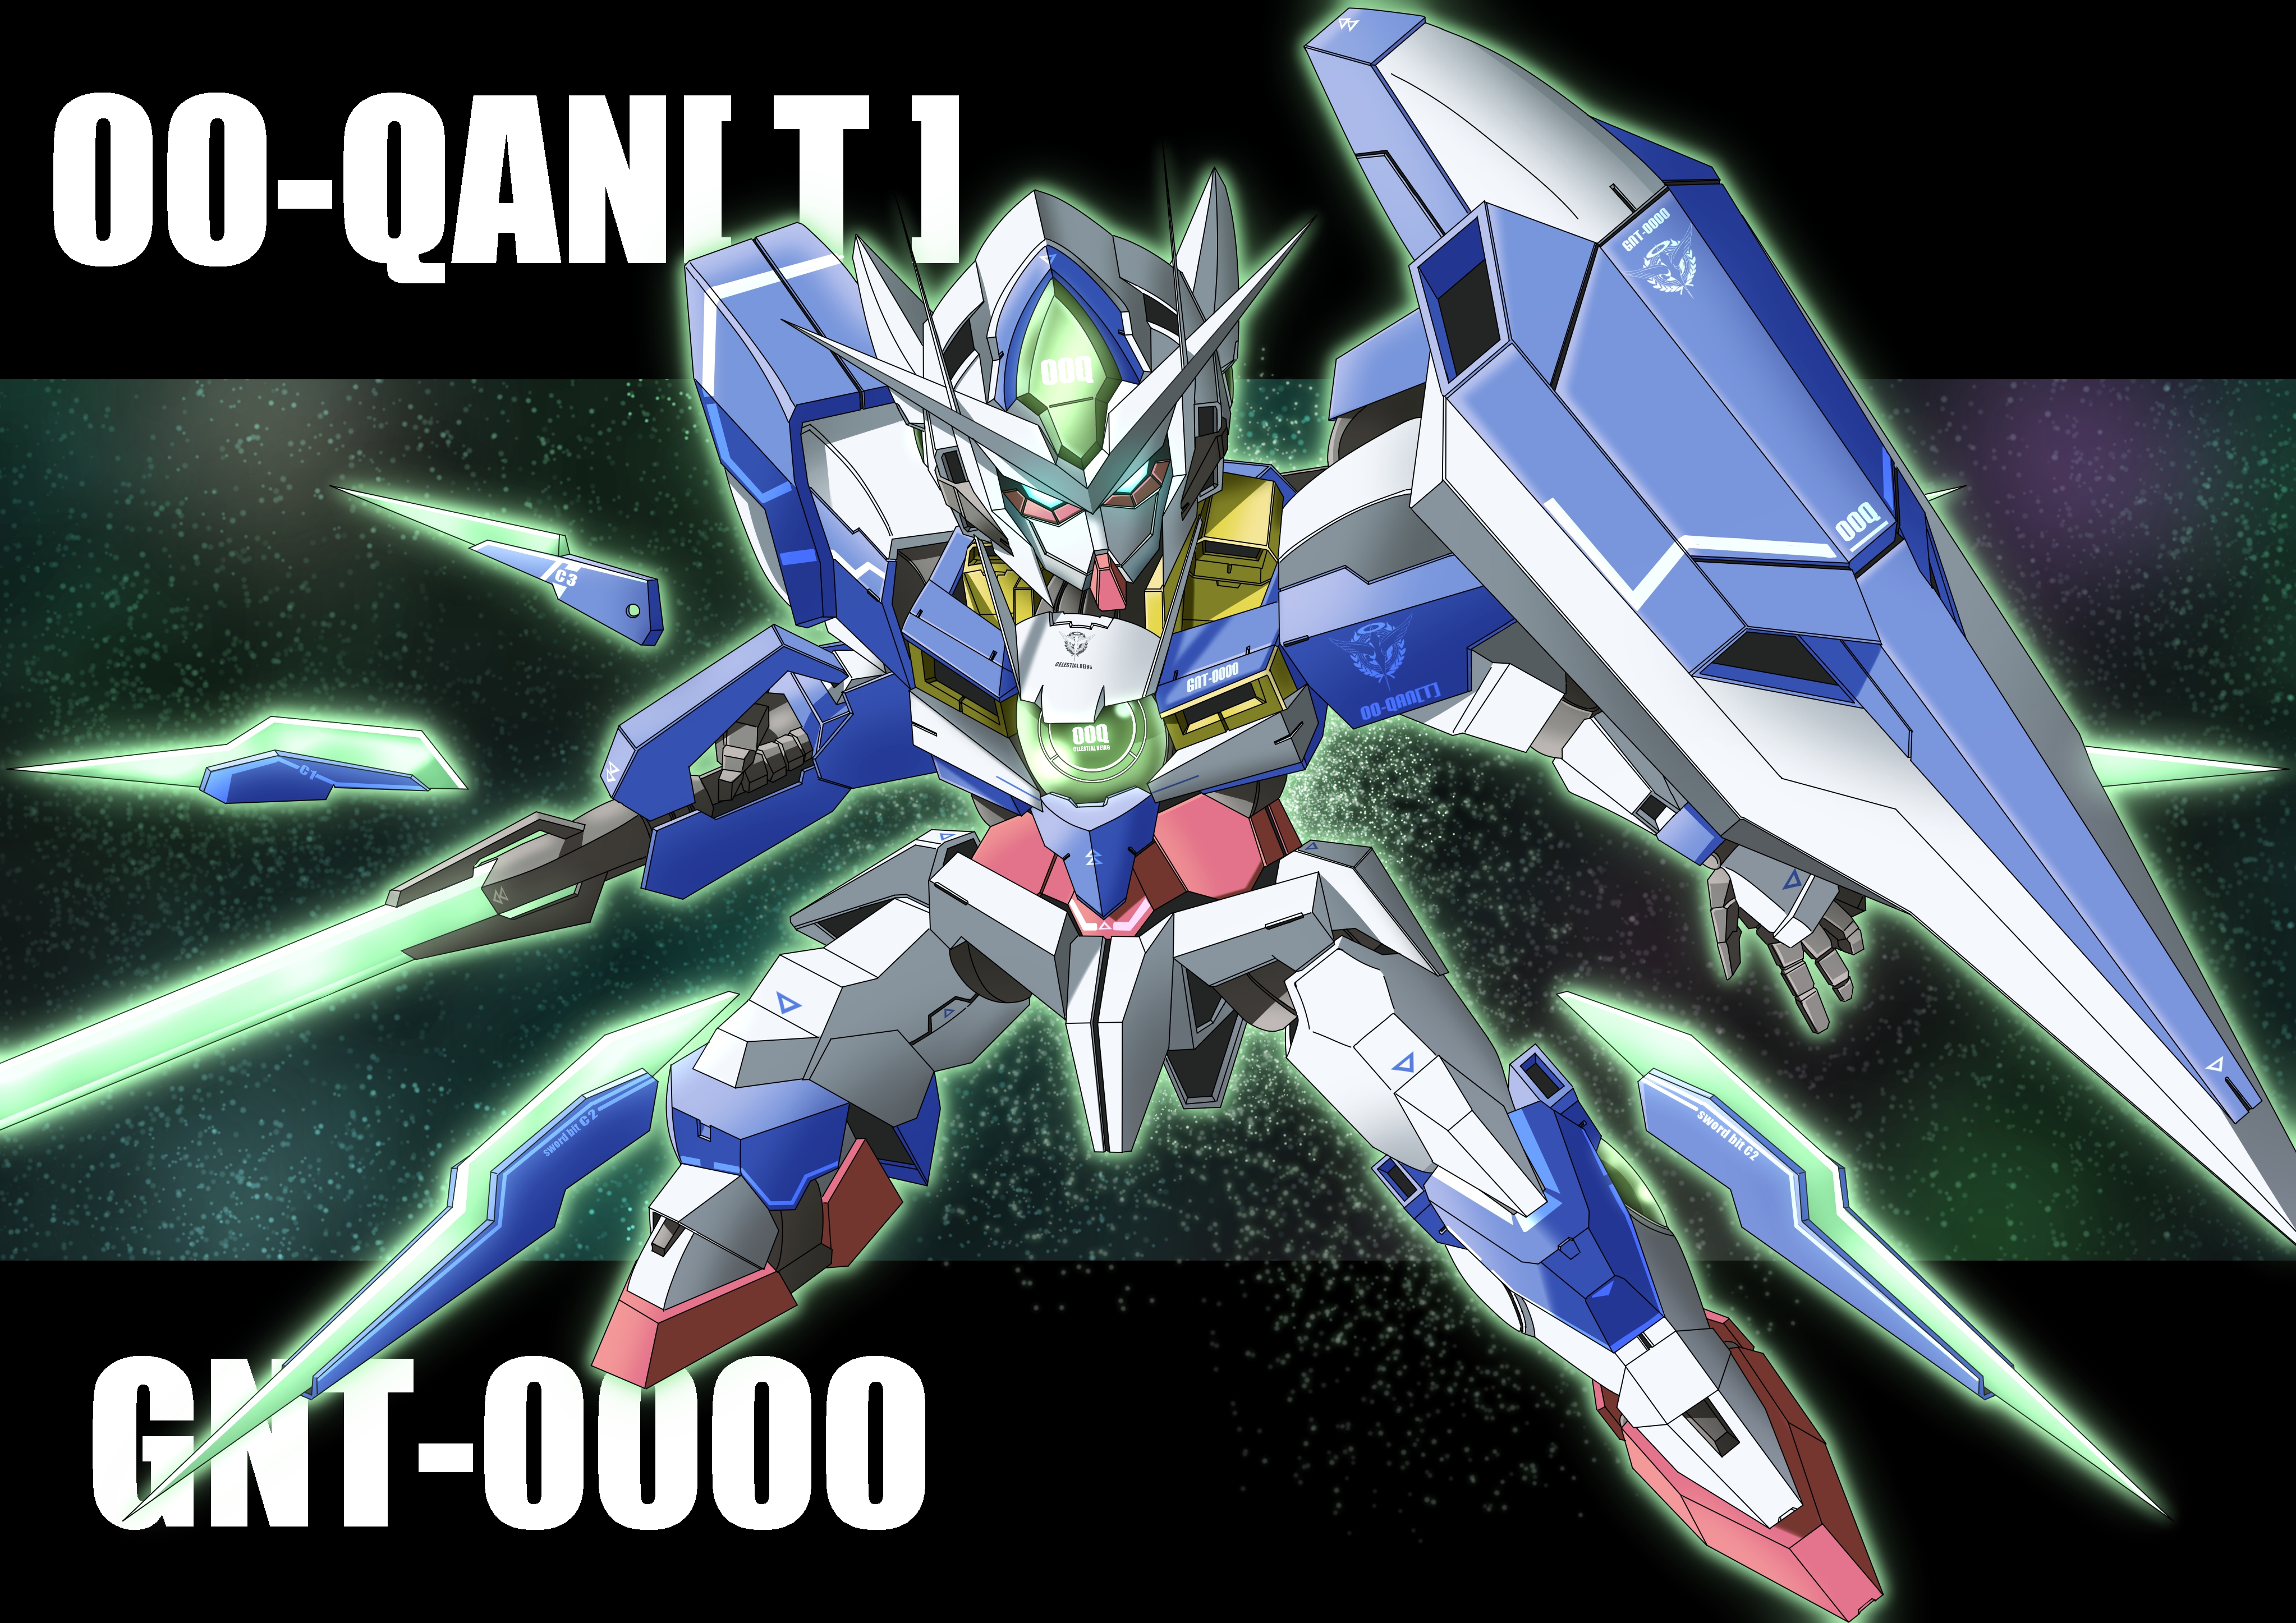 Anime Mech Gundam Super Robot Wars Mobile Suit Gundam 00 00 Qan T Artwork Digital Art Fan Art 4092x2893